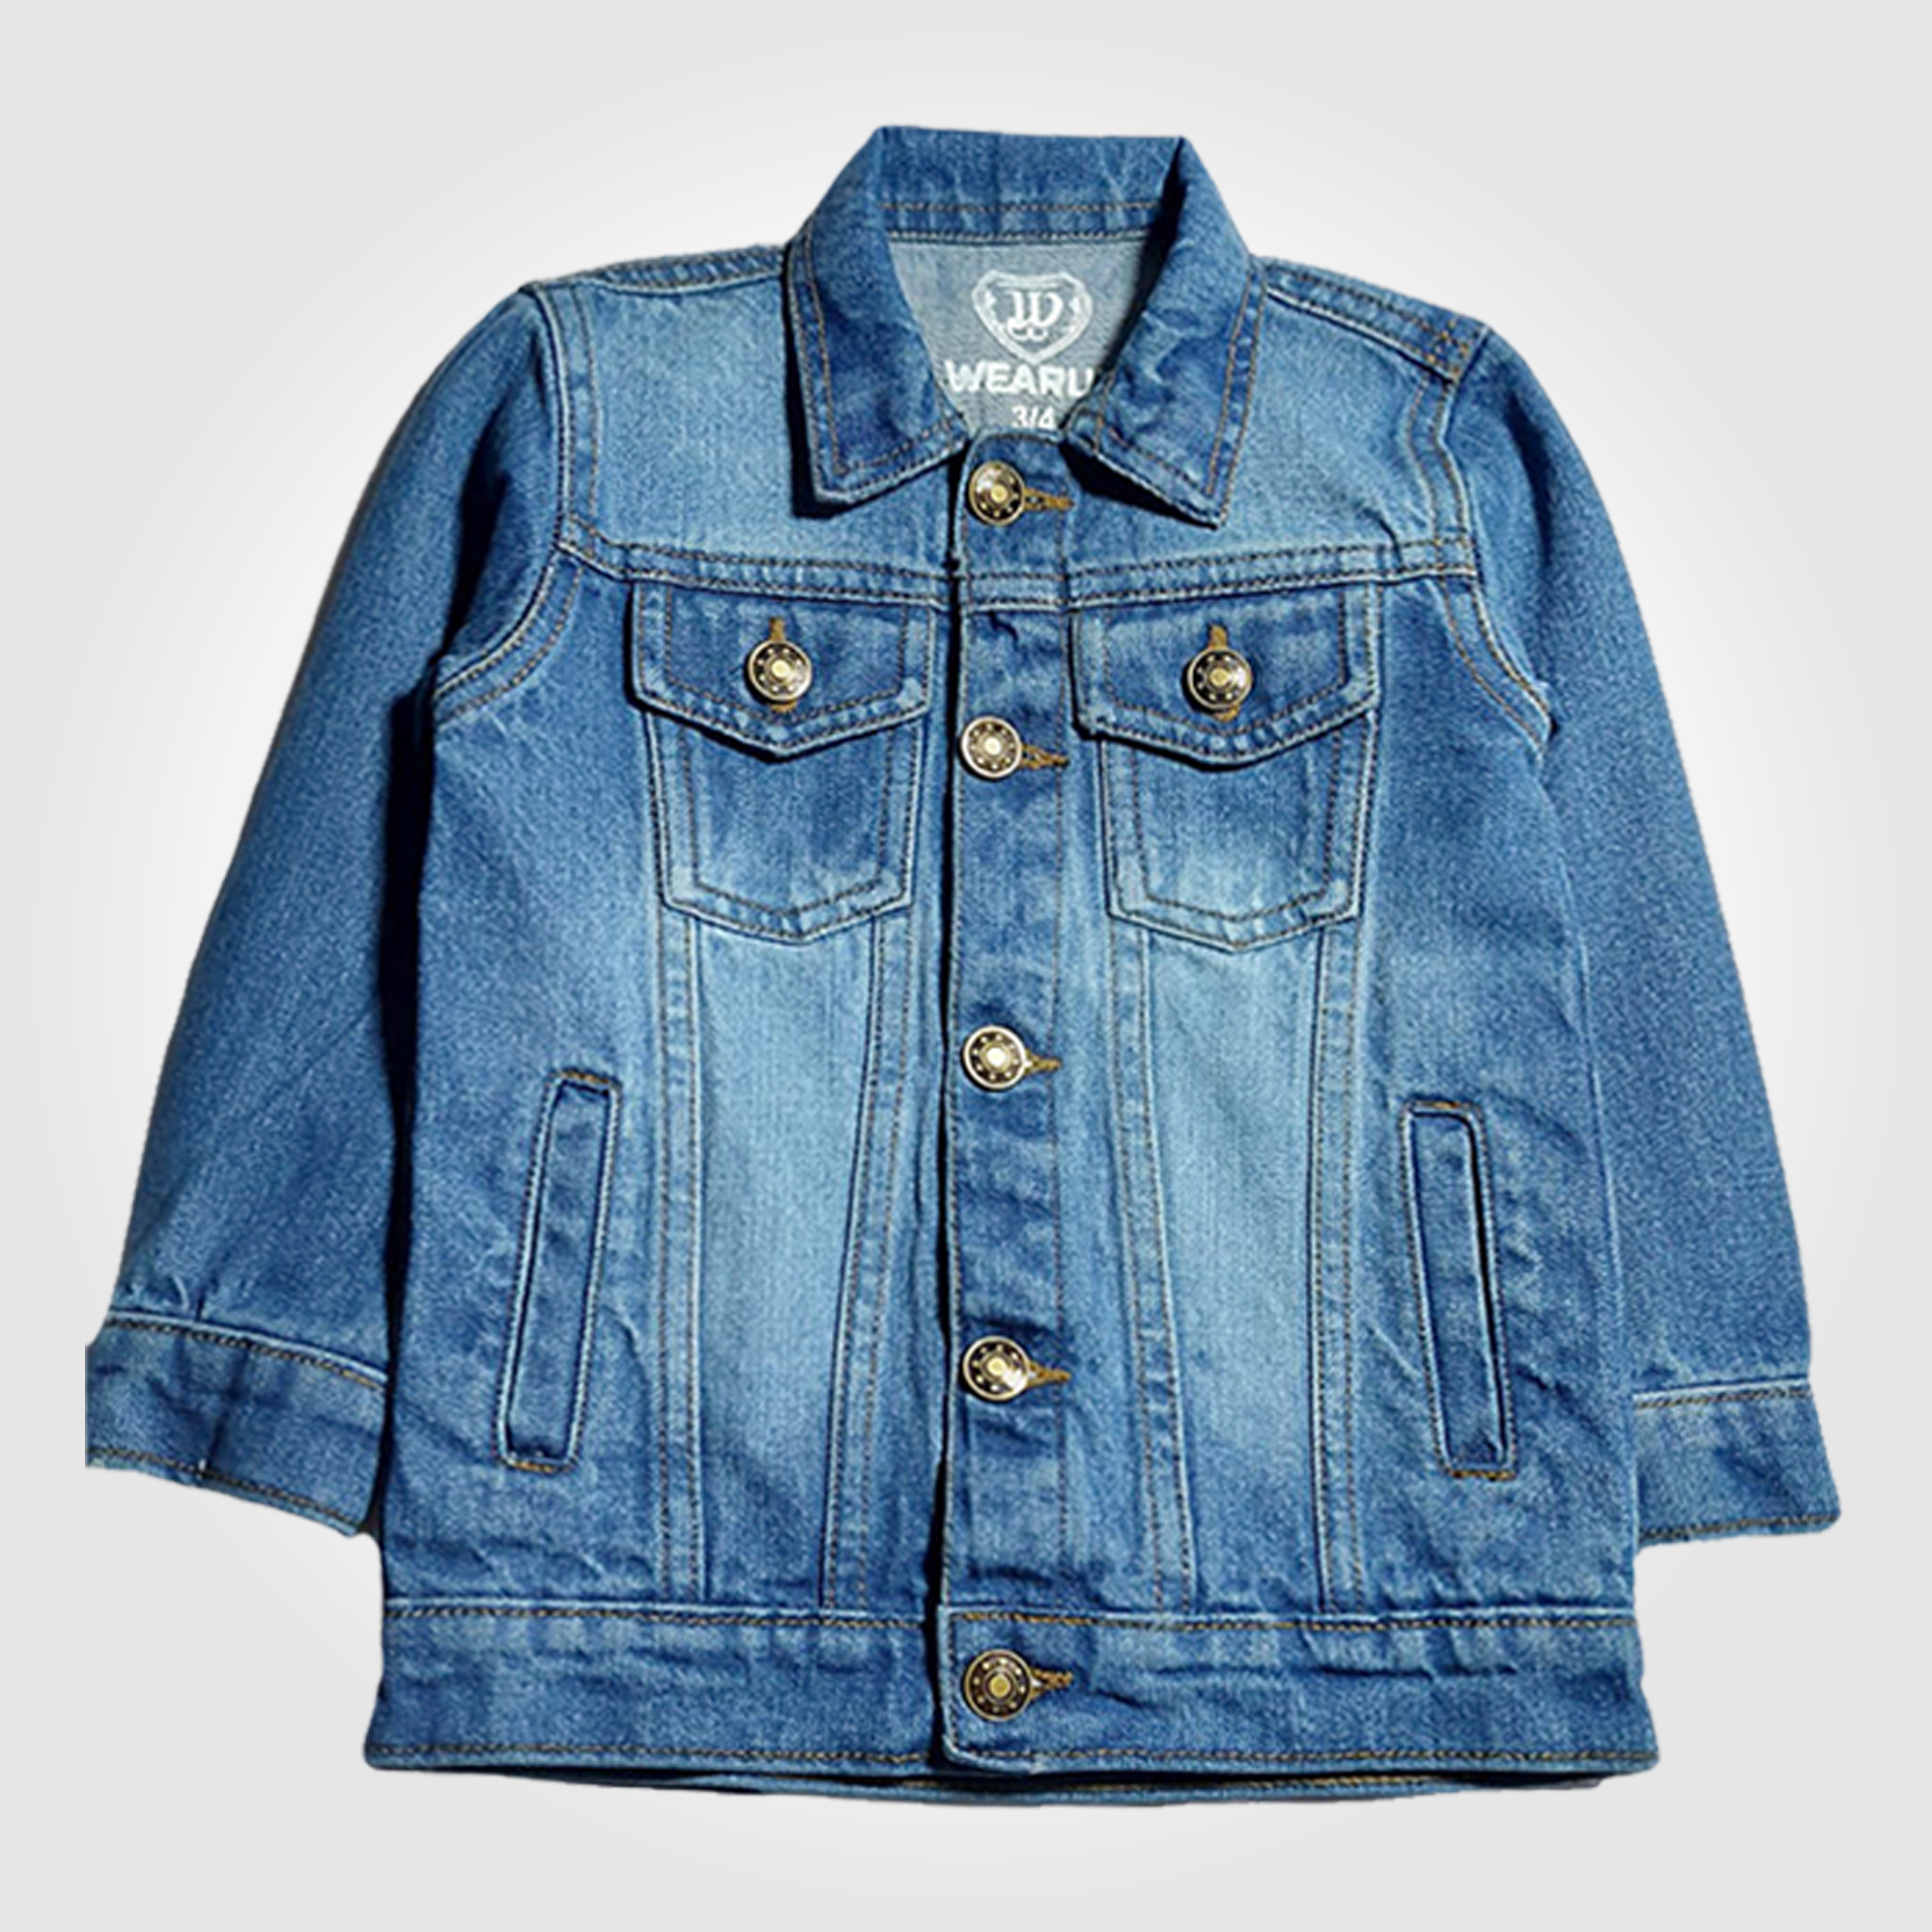 Denim Jacket | Jeans Jacket - Vintage Outerwear Shop Online - A.  AdeelAkhtars